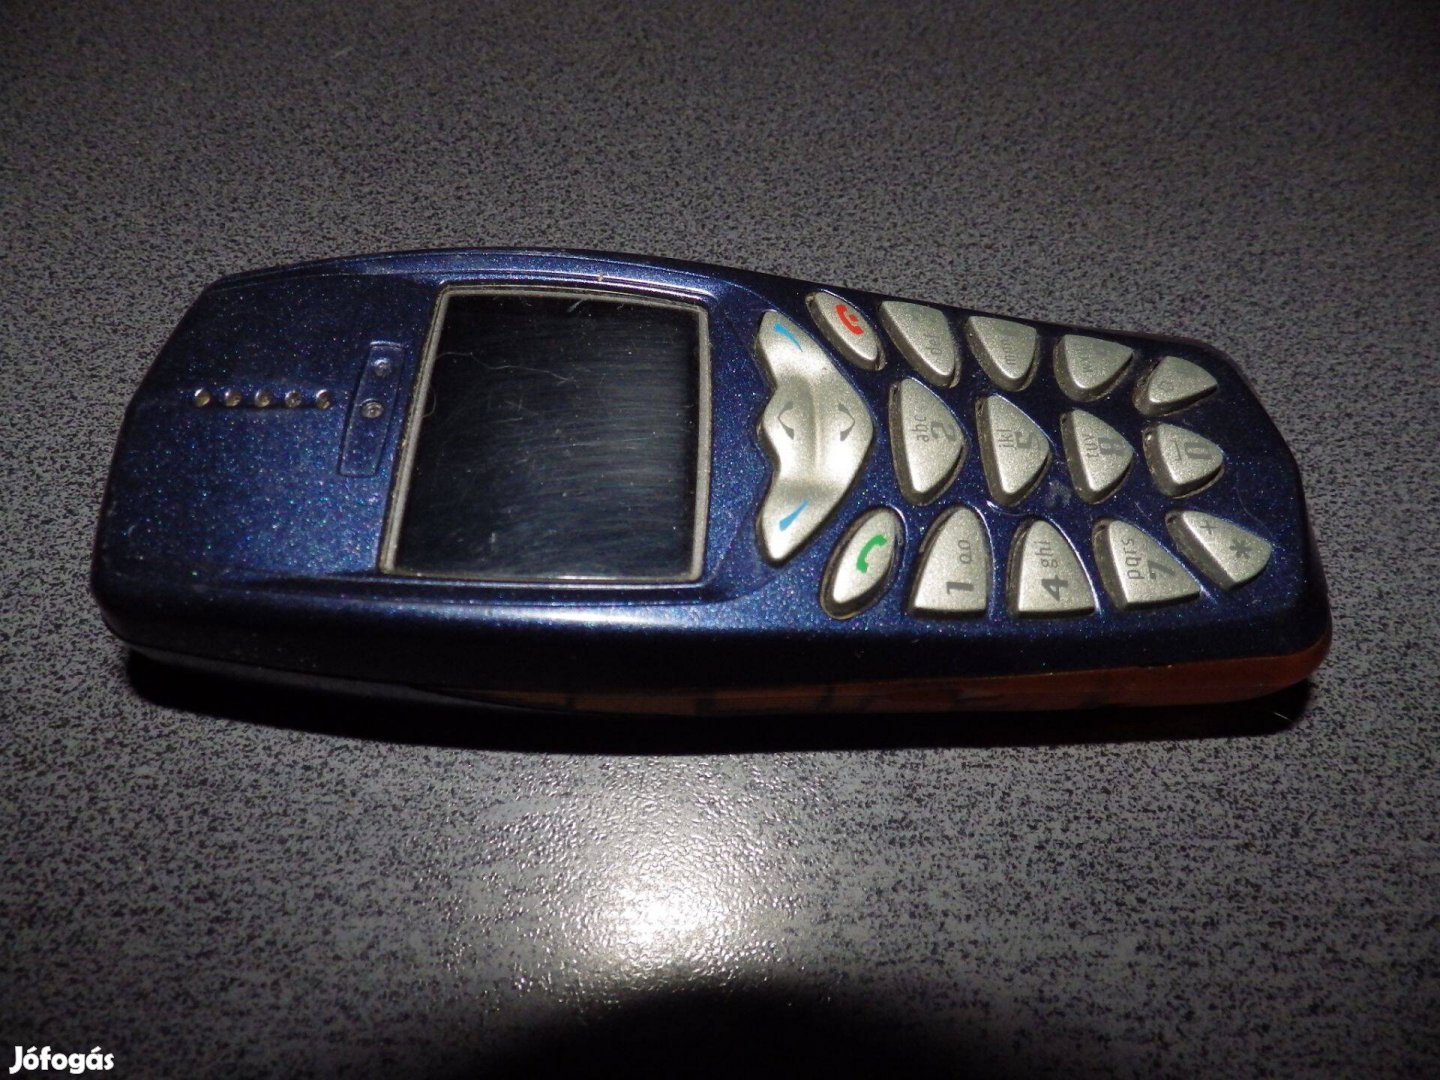 Nokia 3510i mobiltelwfon